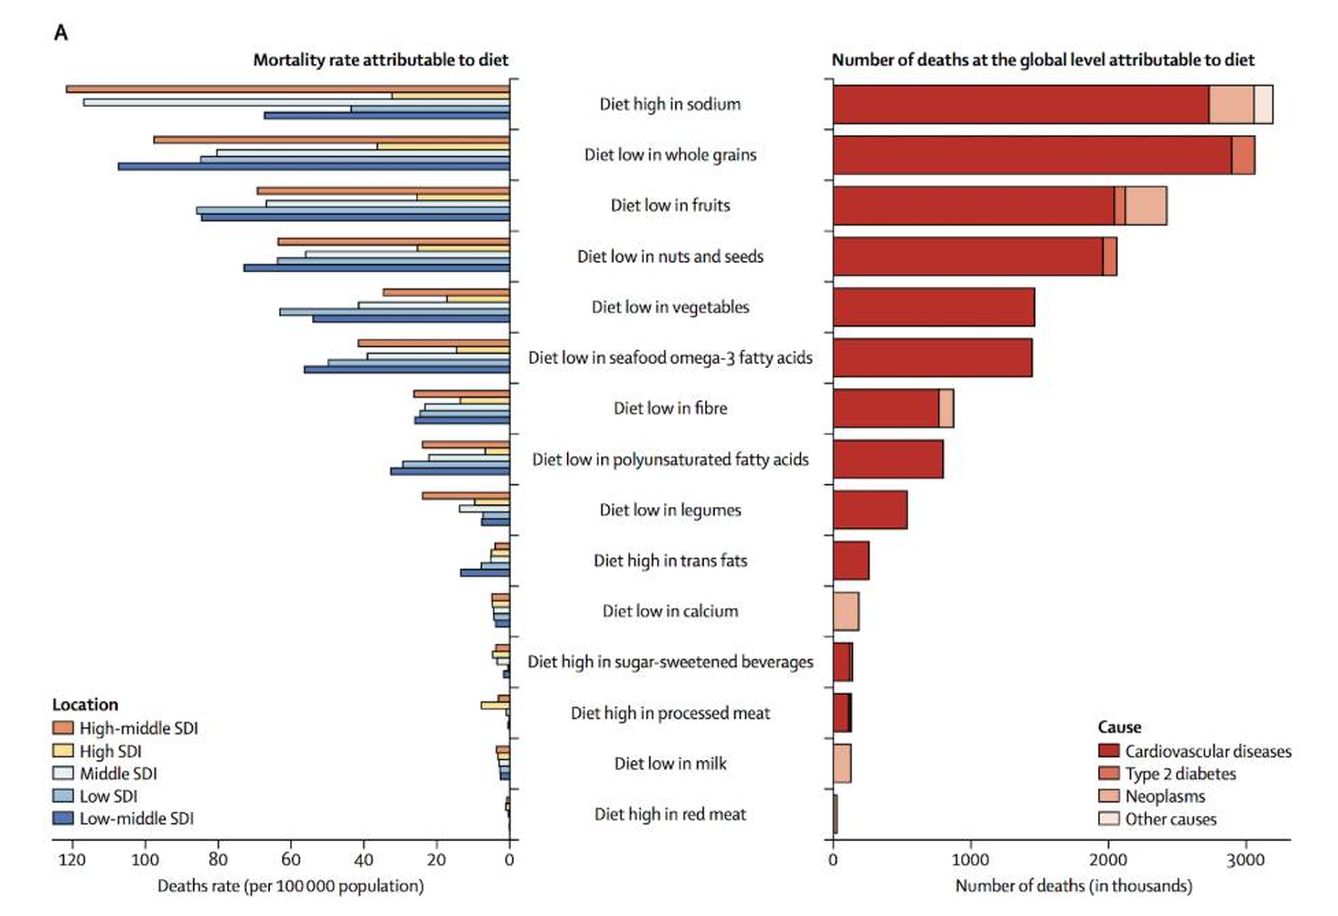 Figura 1. Tasa de mortalidad y número de muertes a nivel global atribuibles a la dieta.